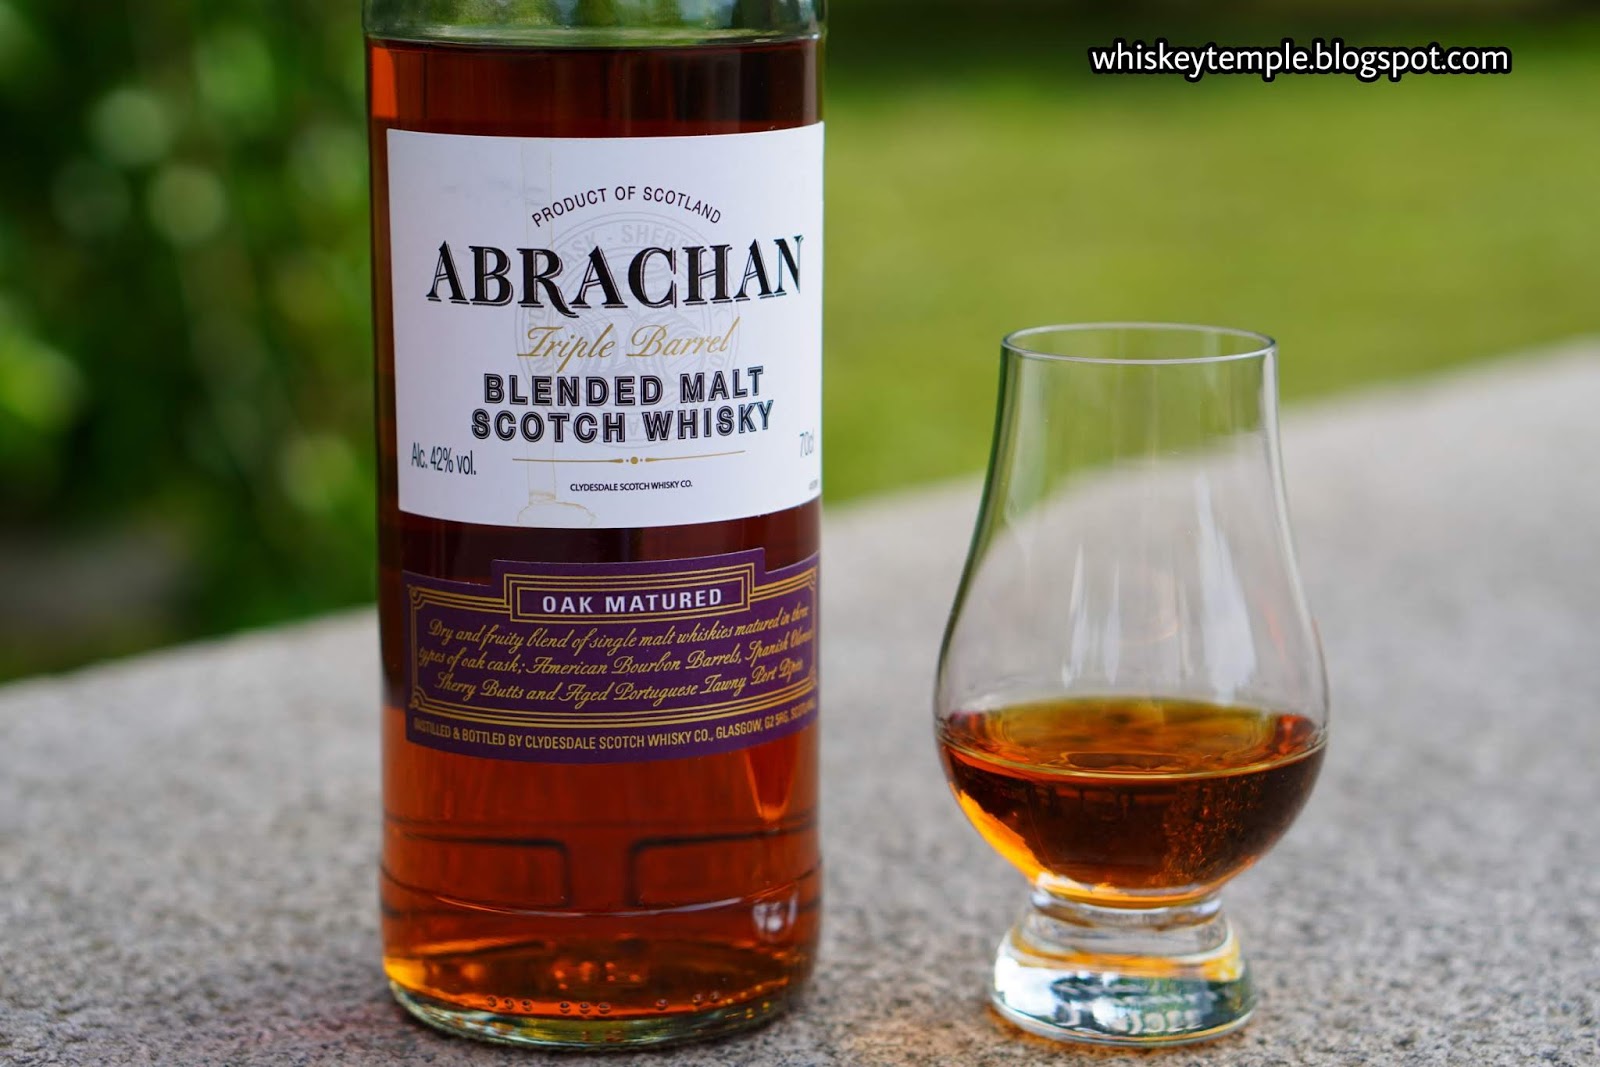 – Triple whisky Abrachan Whiskeytemple blended barrel malt